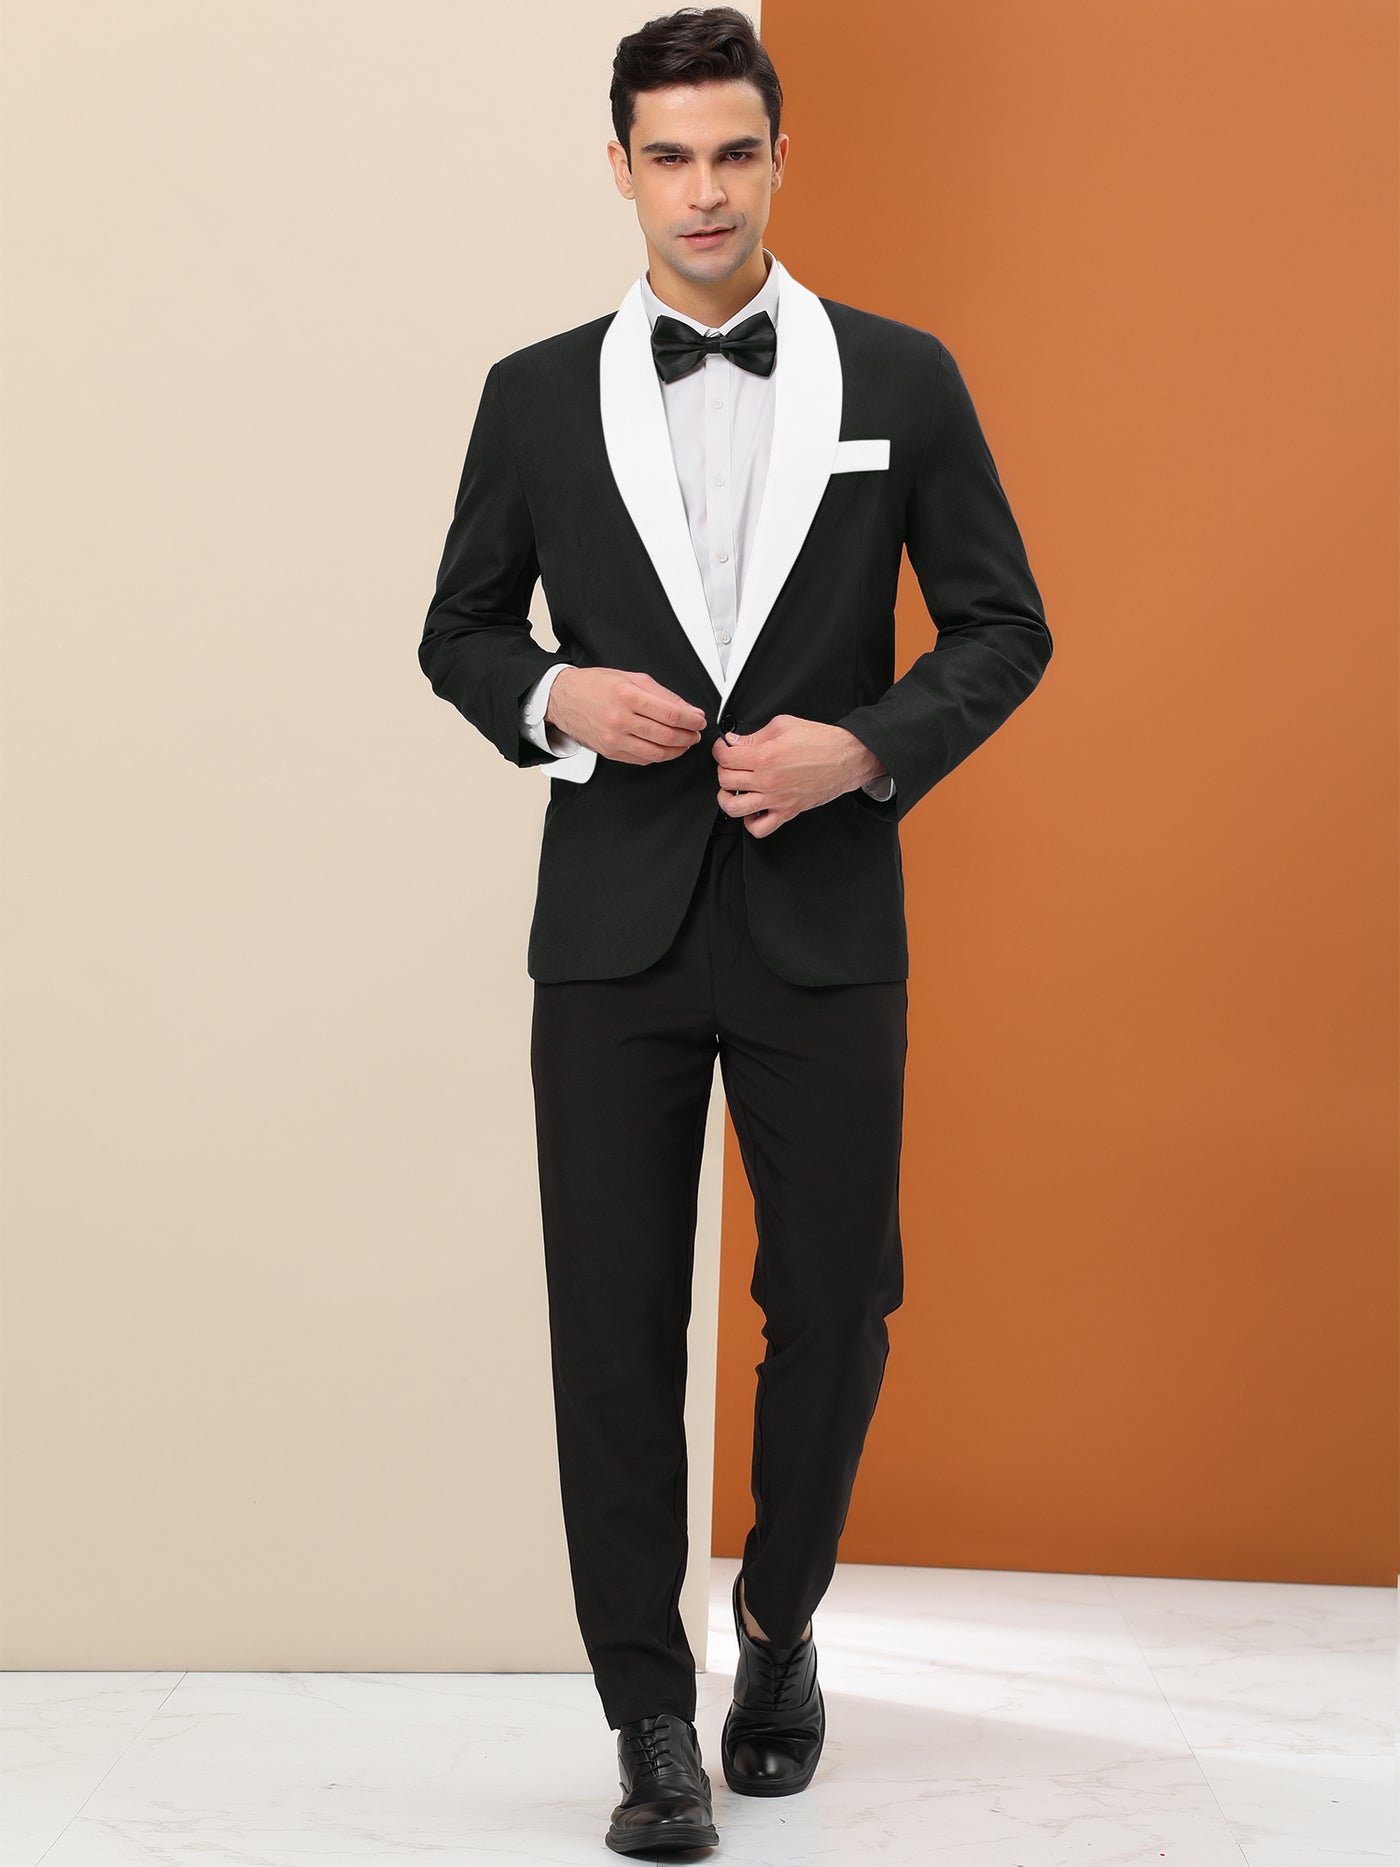 Bublédon Men's Formal Blazer Slim Fit Contrast Color One Button Sports Coat